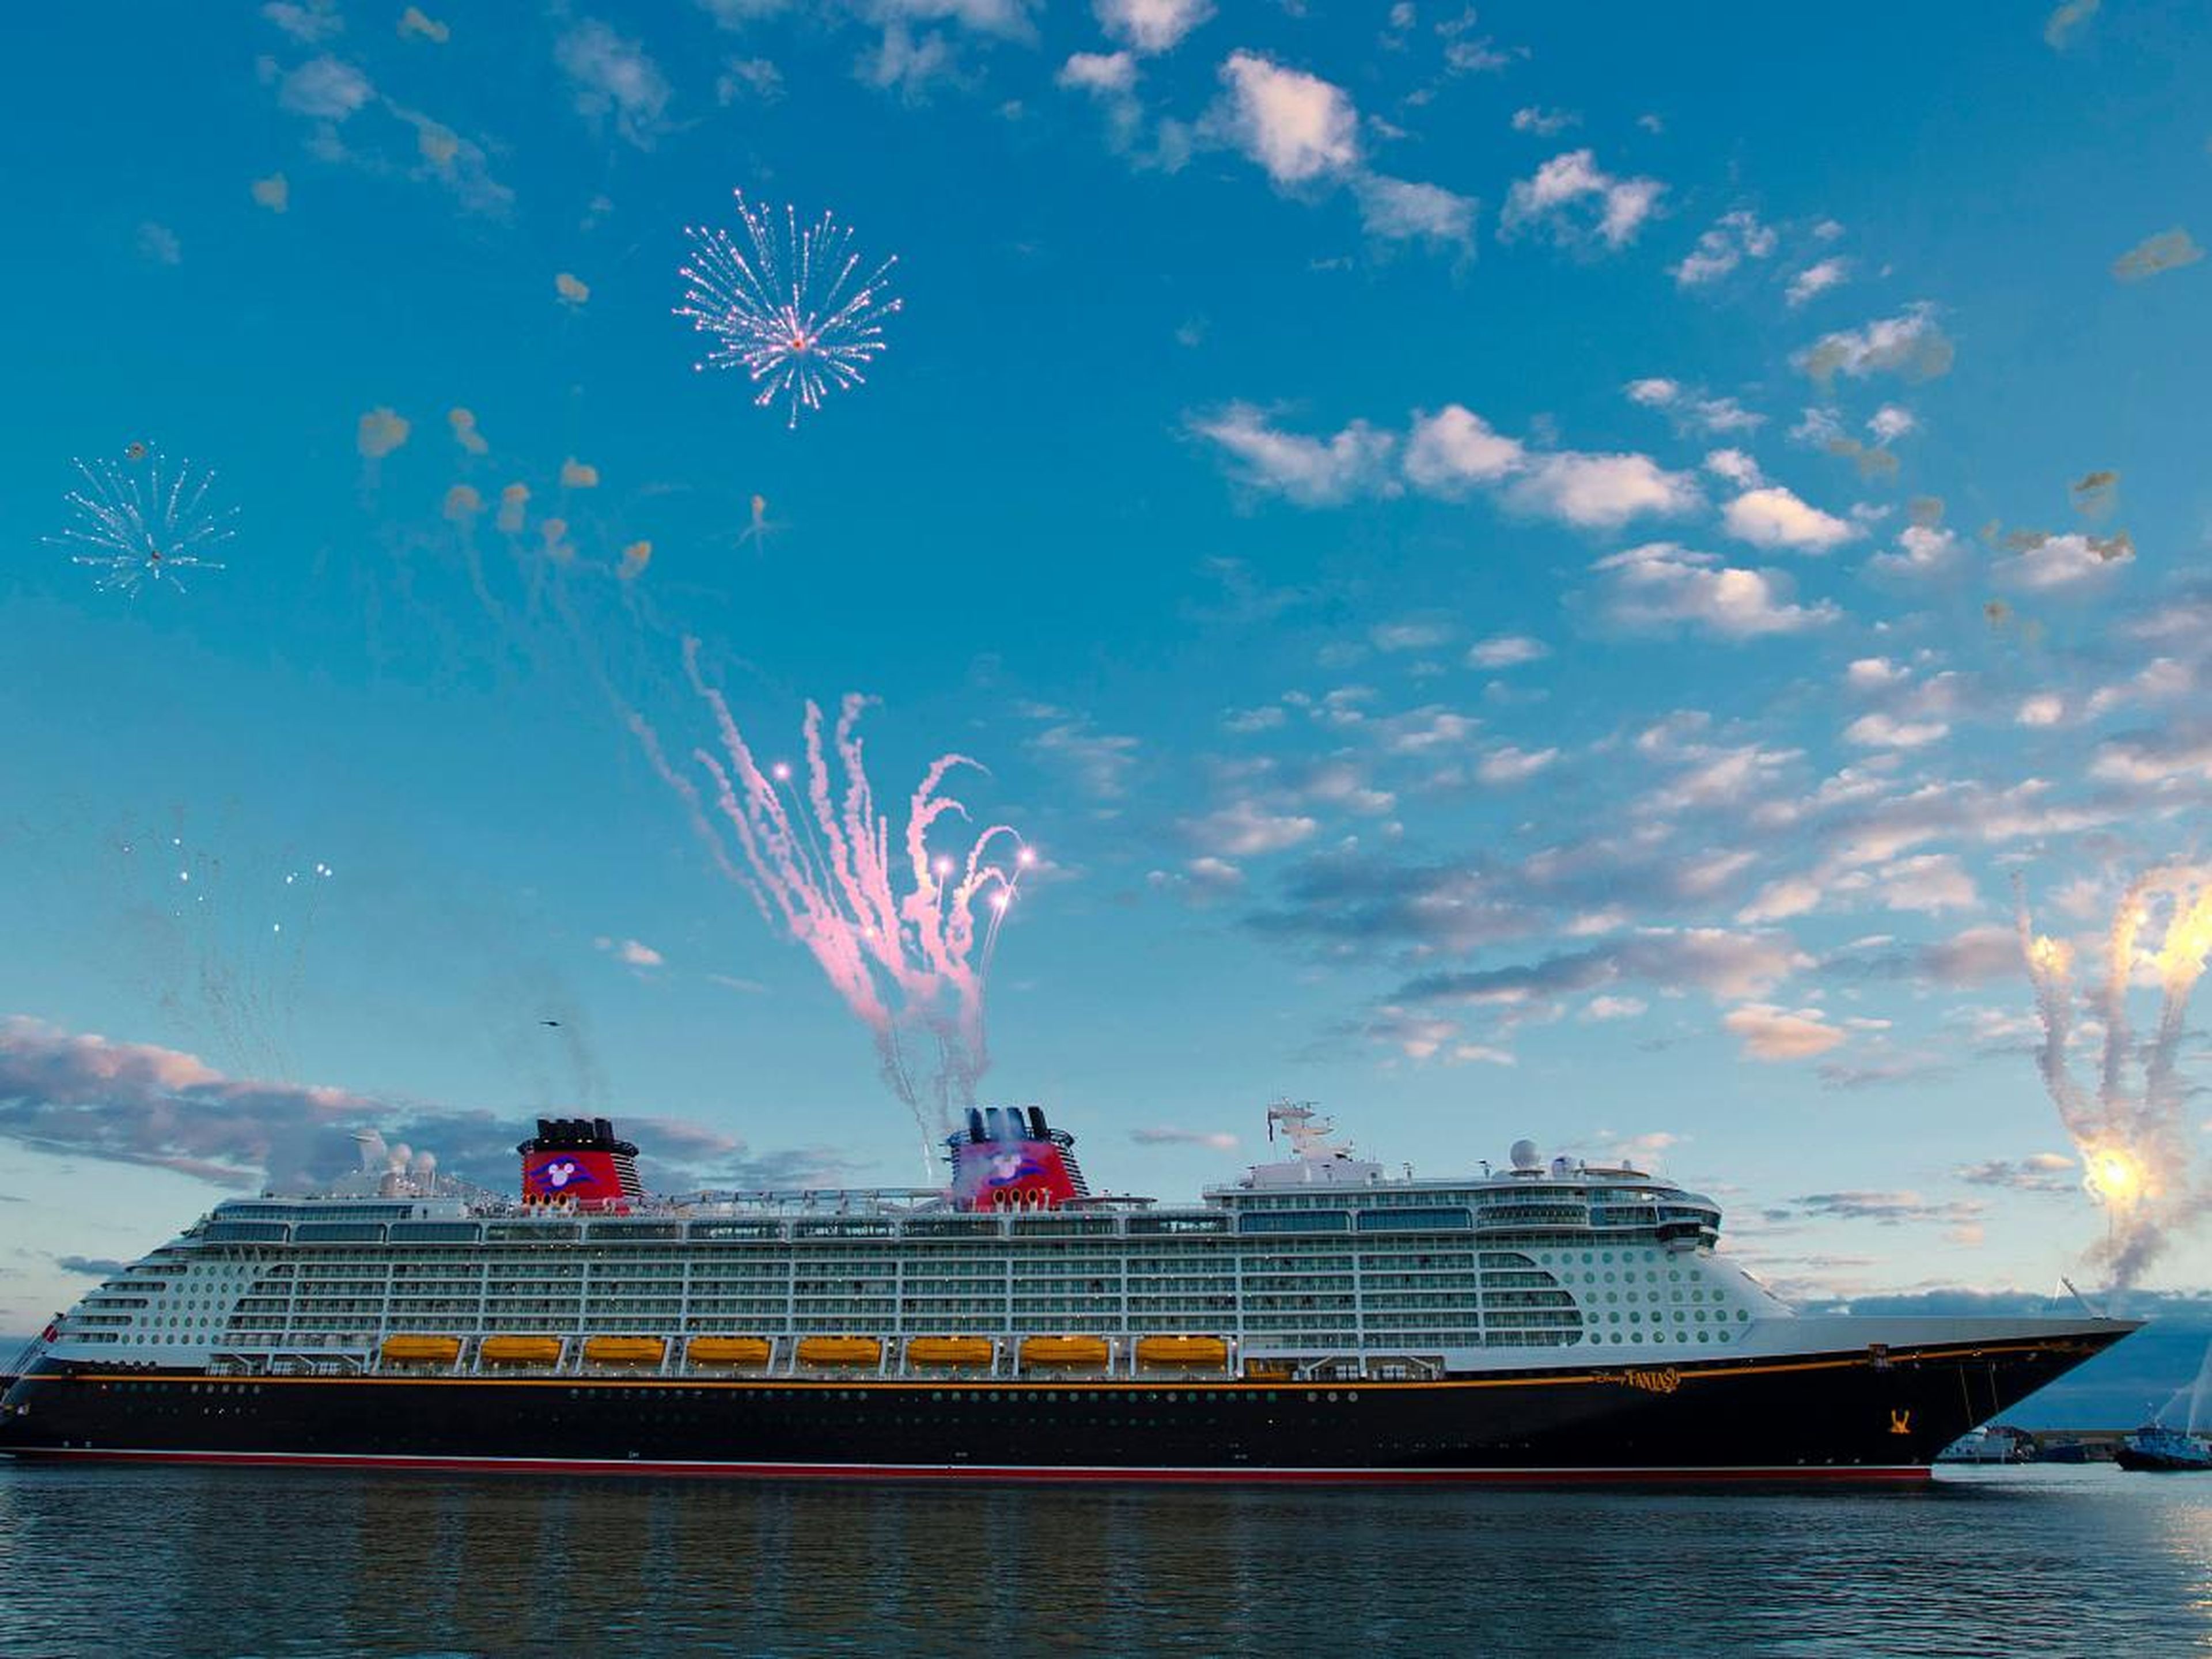 Muchos viajeros no saben que el crucero de Disney es conocido por sus eventos y espacios dedicados en exclusiva para adultos.